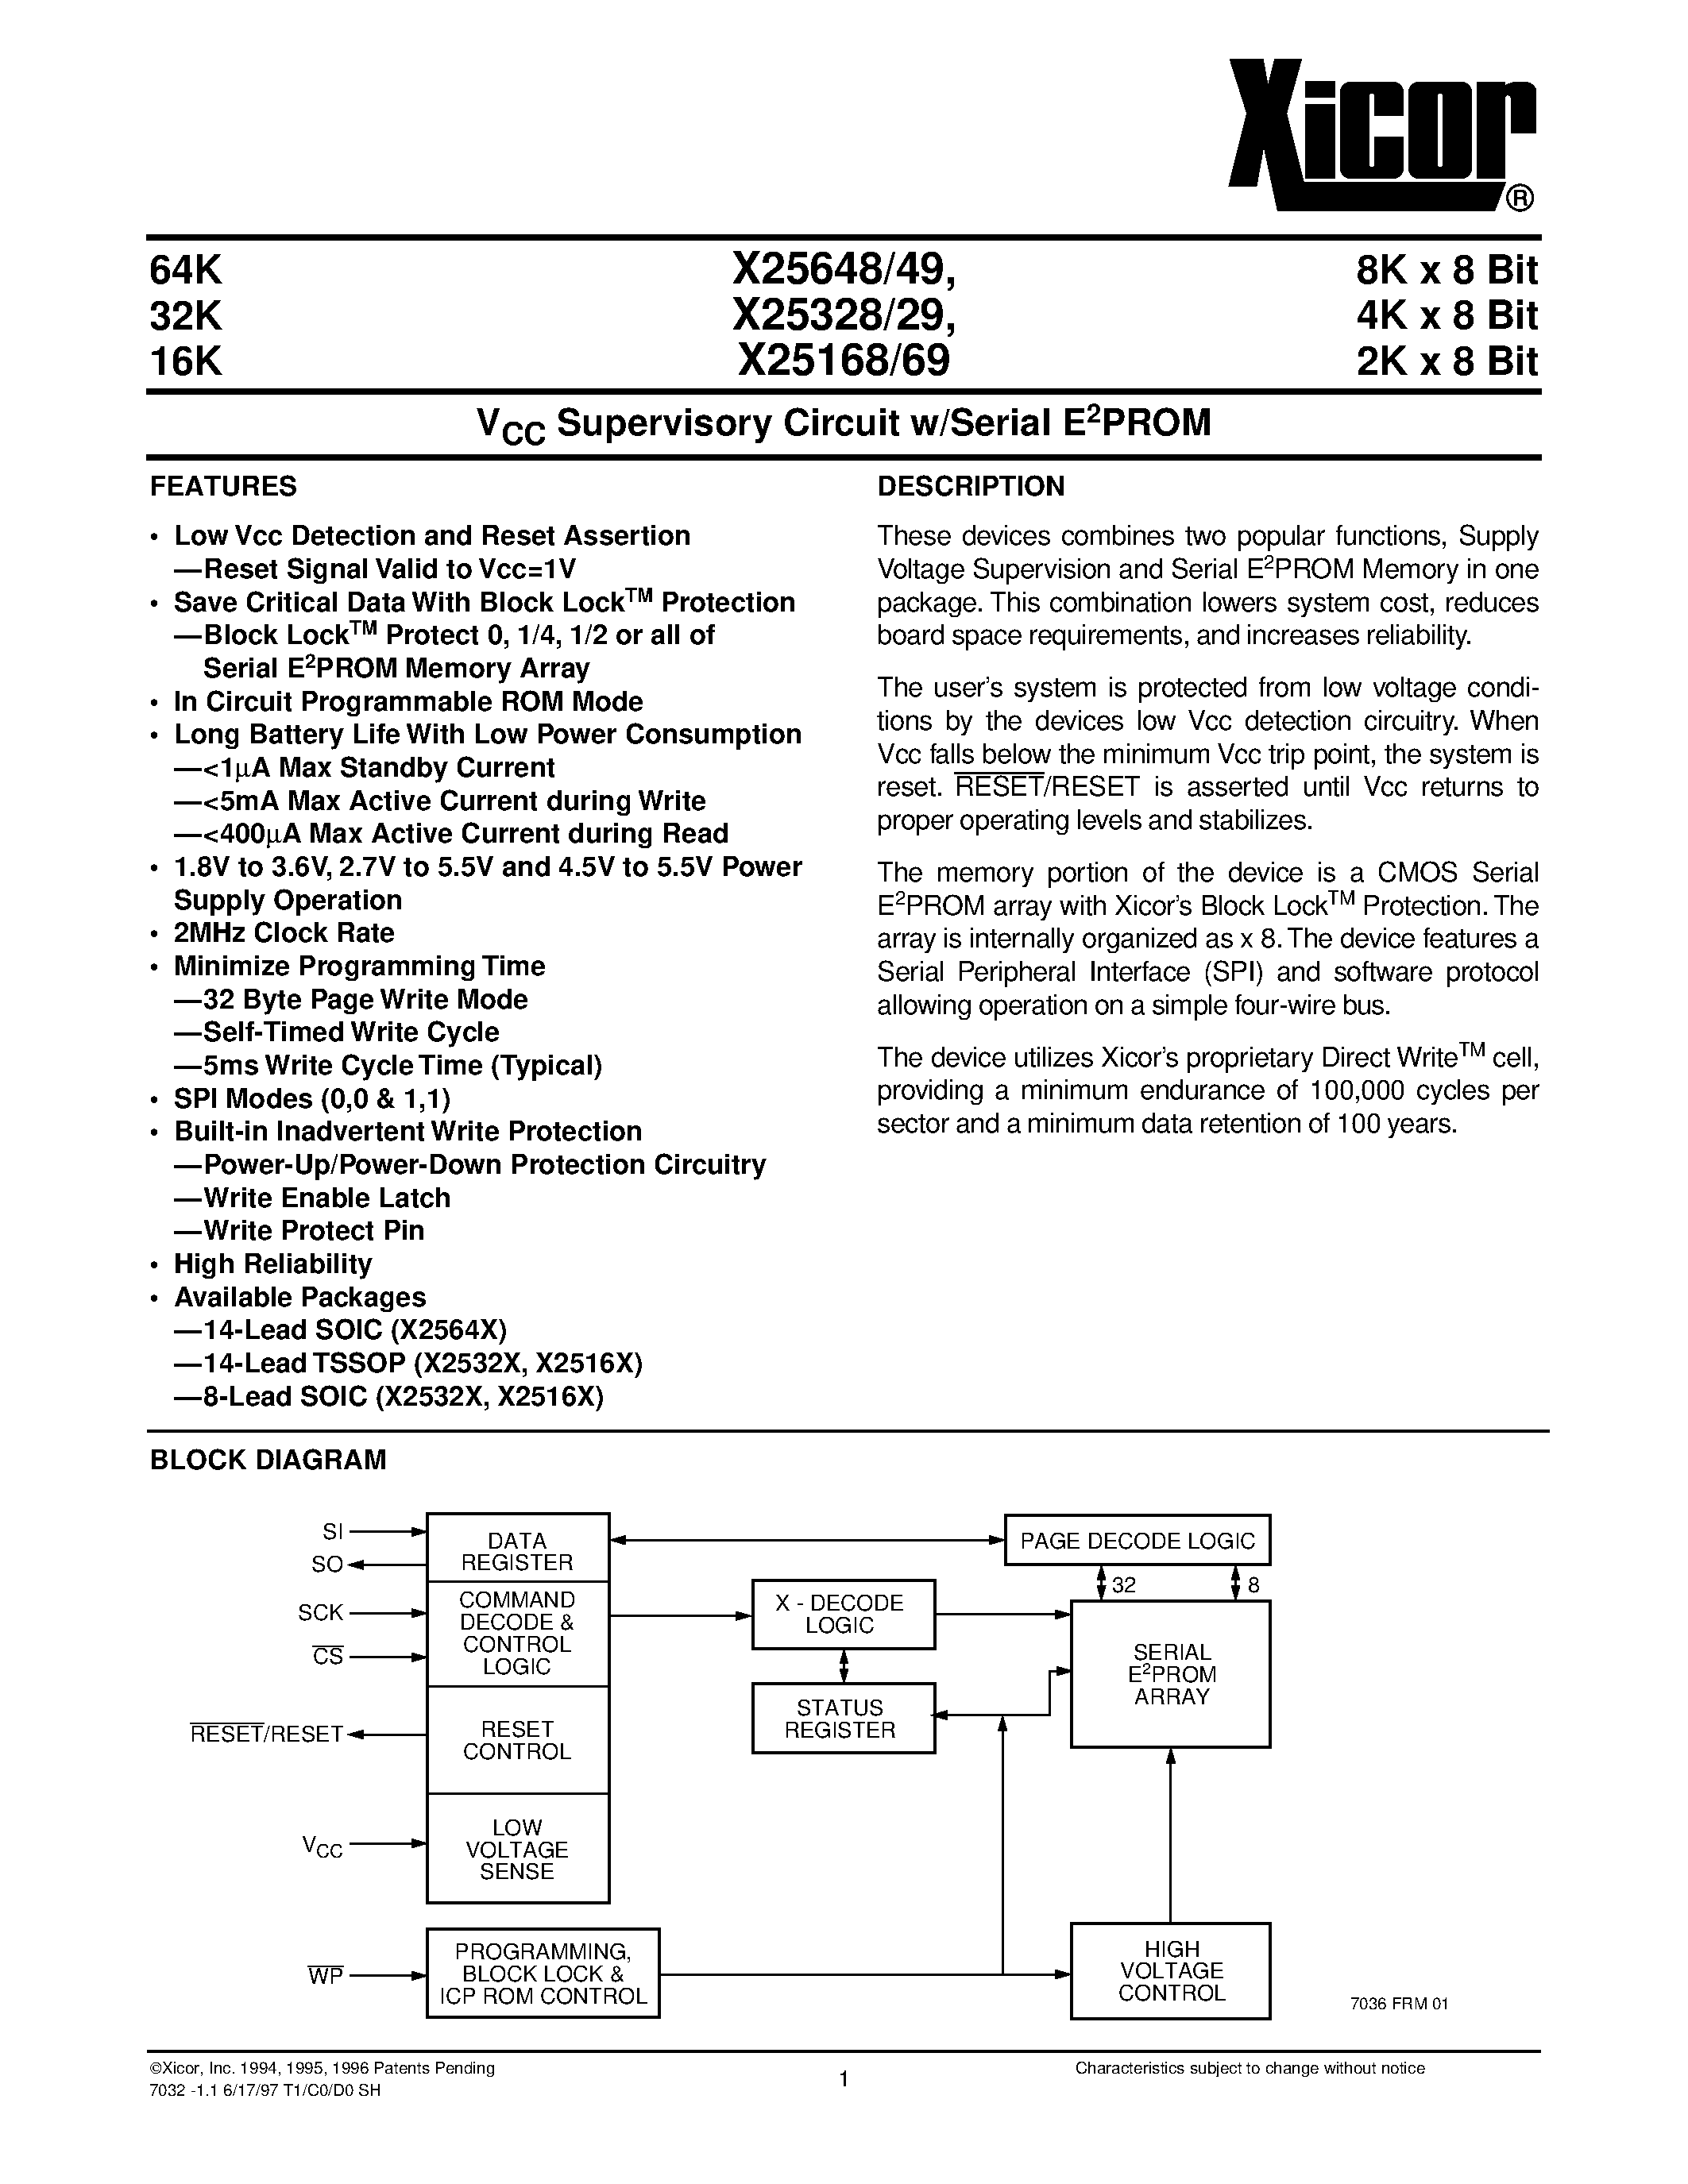 Даташит X25648S14-2.7 - V CC Supervisory Circuit w/Serial E 2 PROM страница 1